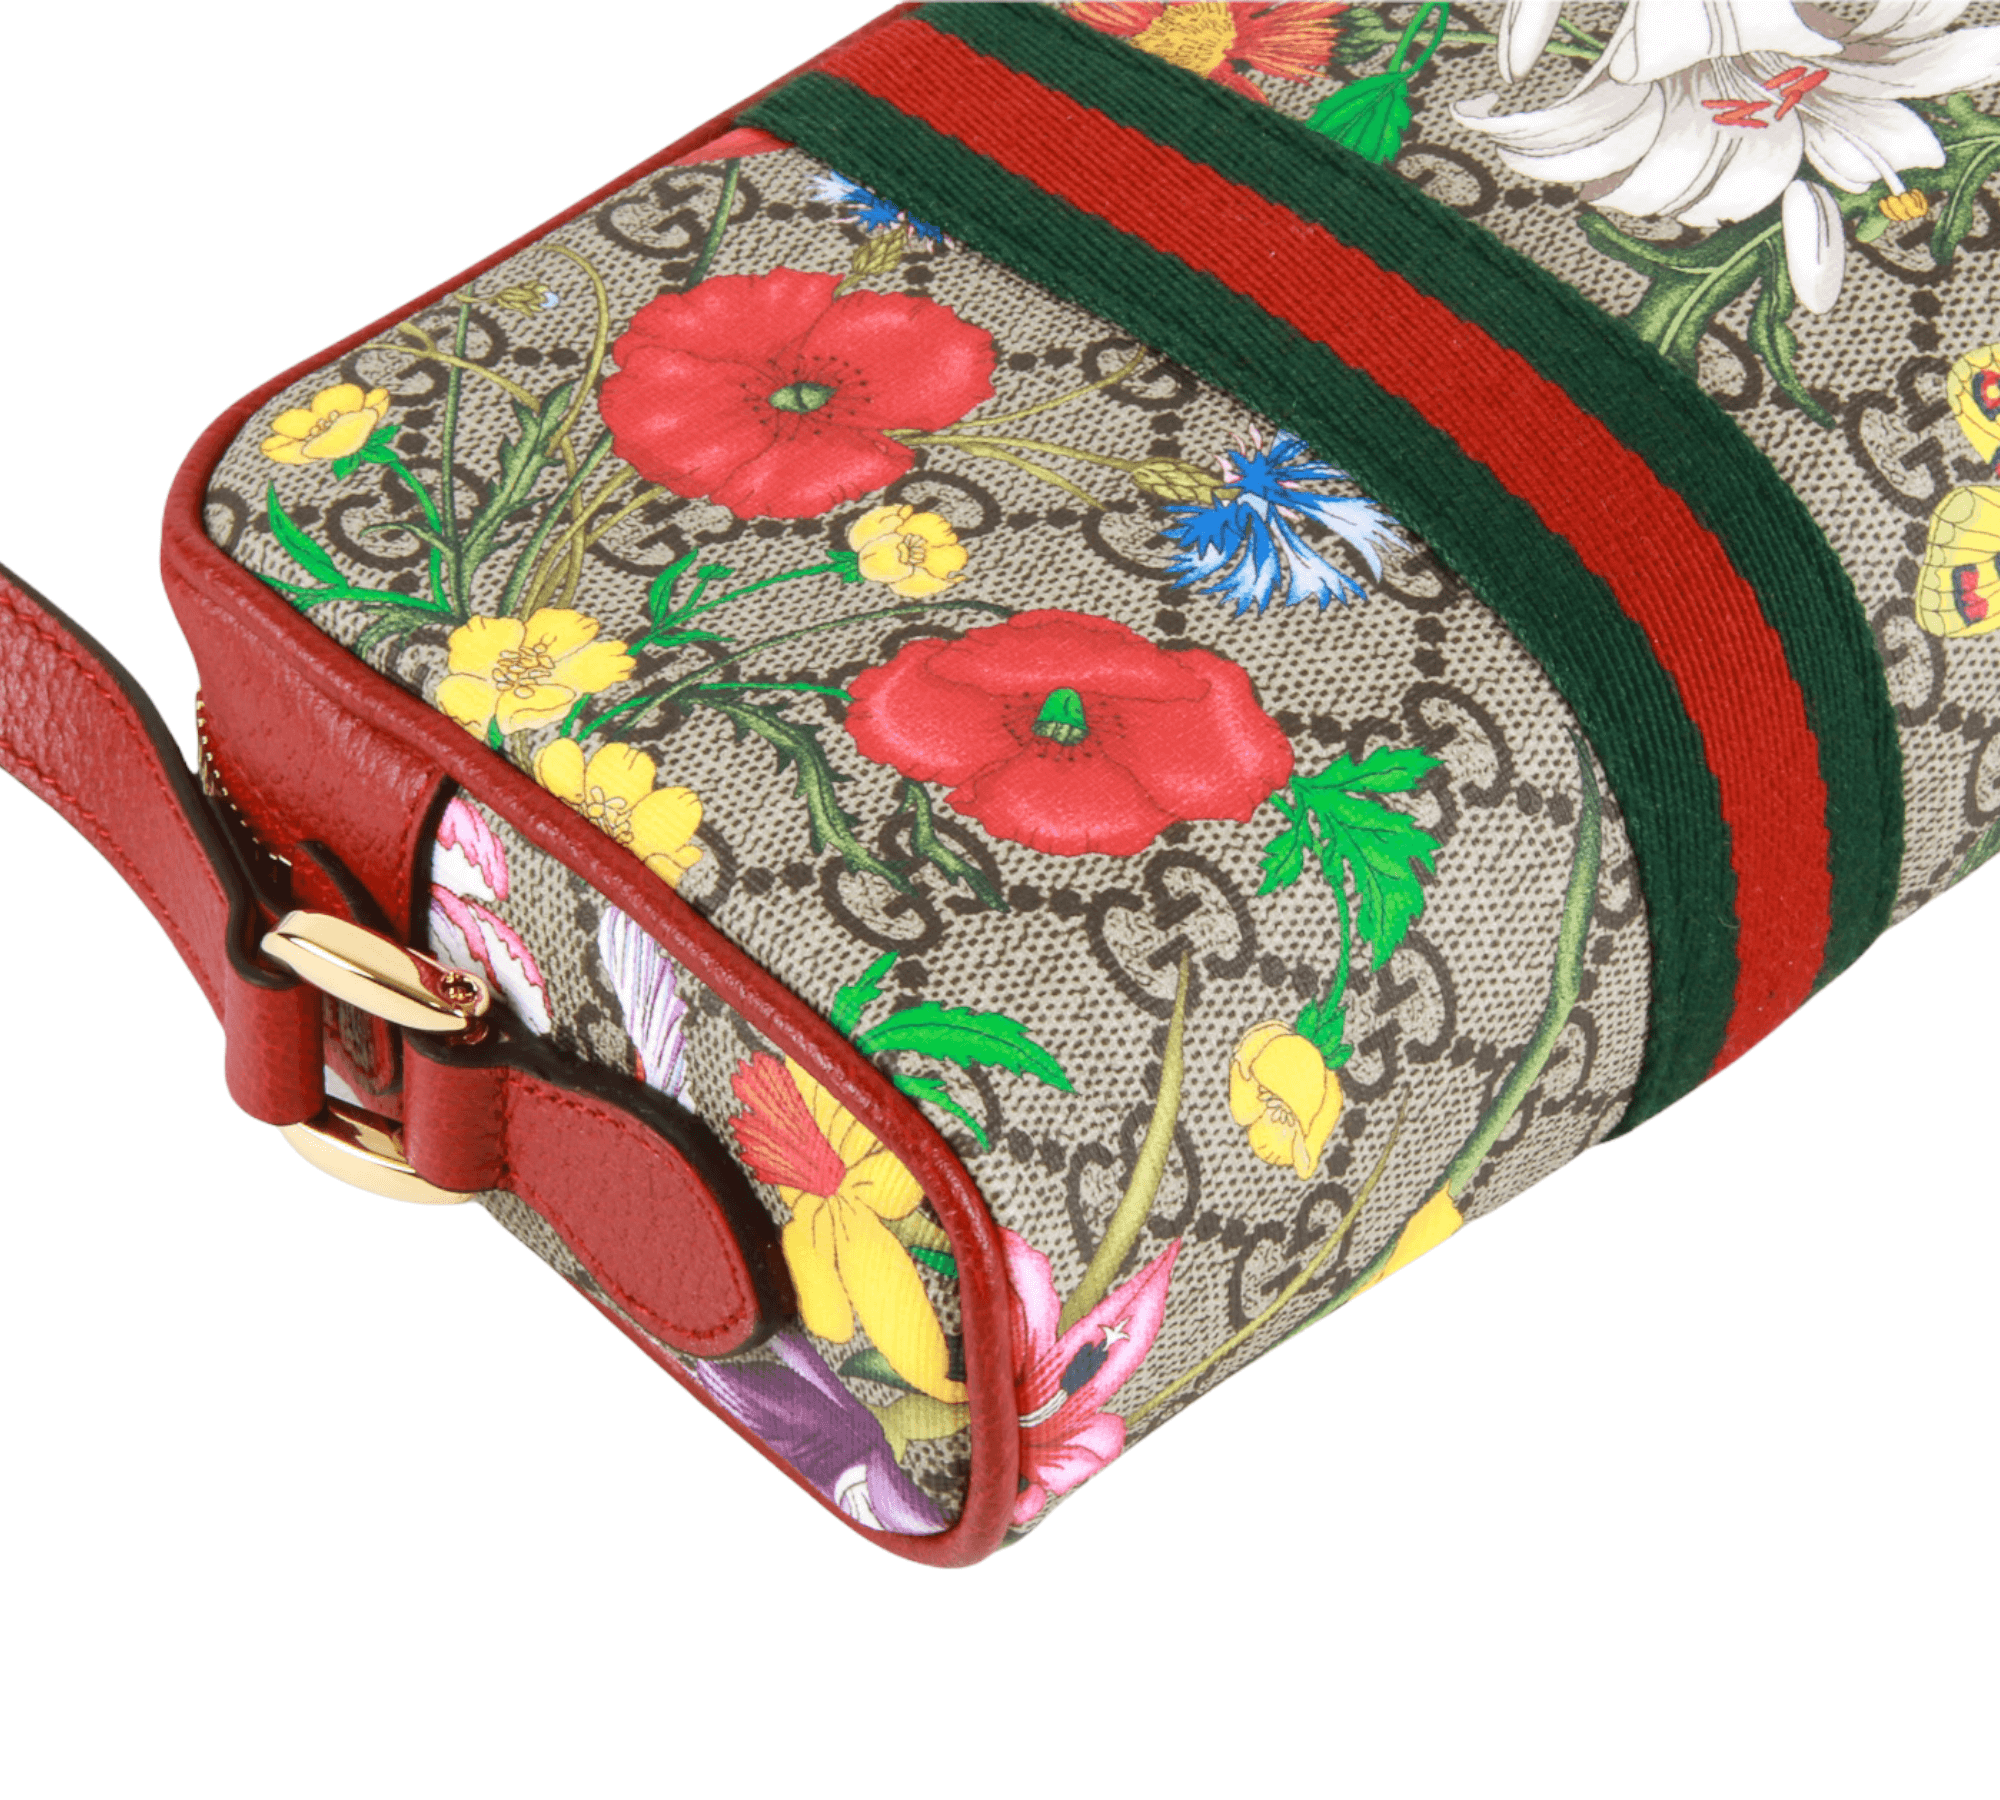 Ophidia Mini GG Supreme Canvas Bag in Multicoloured - Gucci